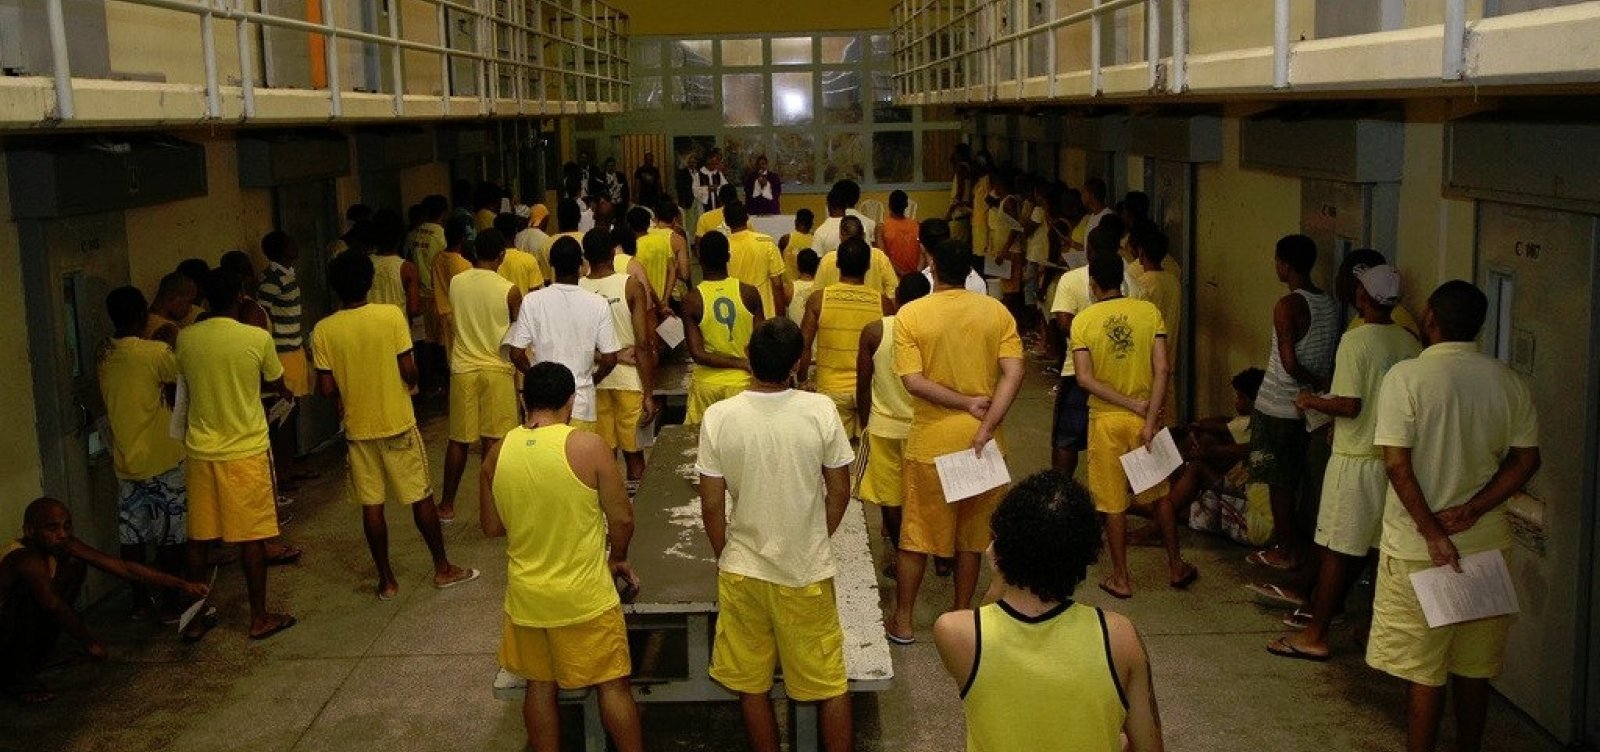 STJ manda soltar presos que tiverem liberdade provisória condicionada à fiança